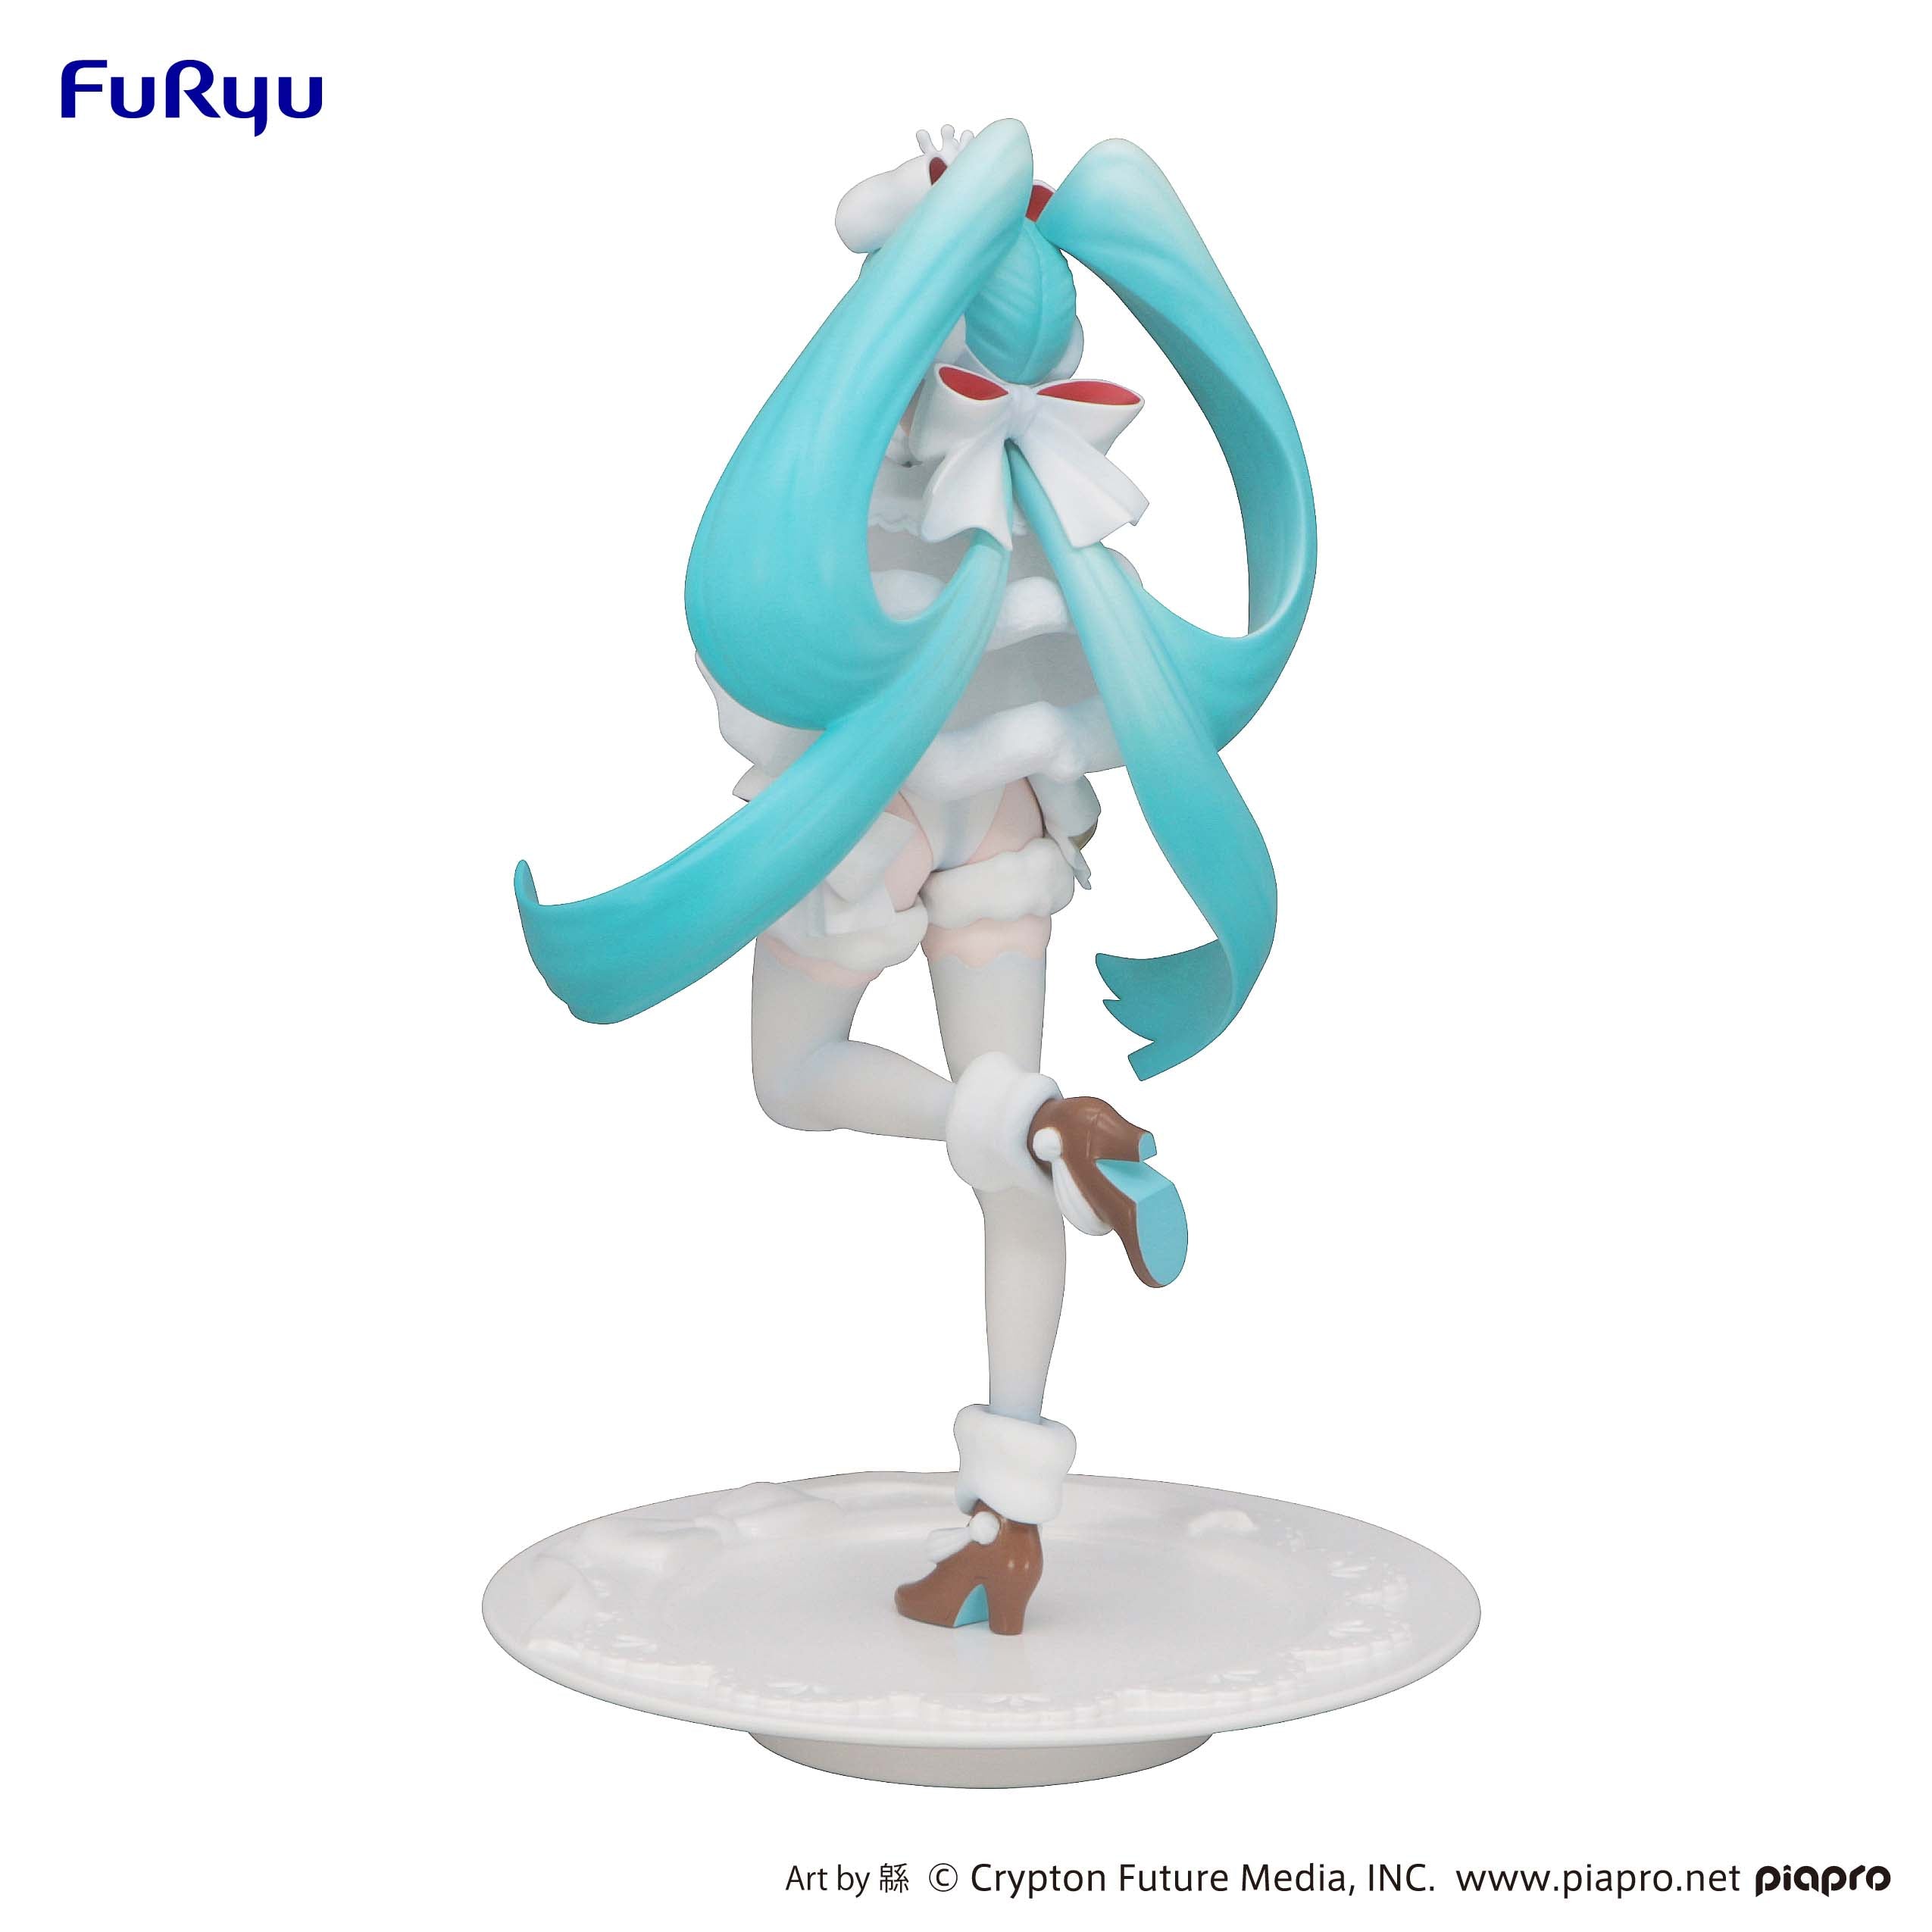 Furyu Figures Exceed Creative: Hatsune Miku - Sweetsweets Series Noel